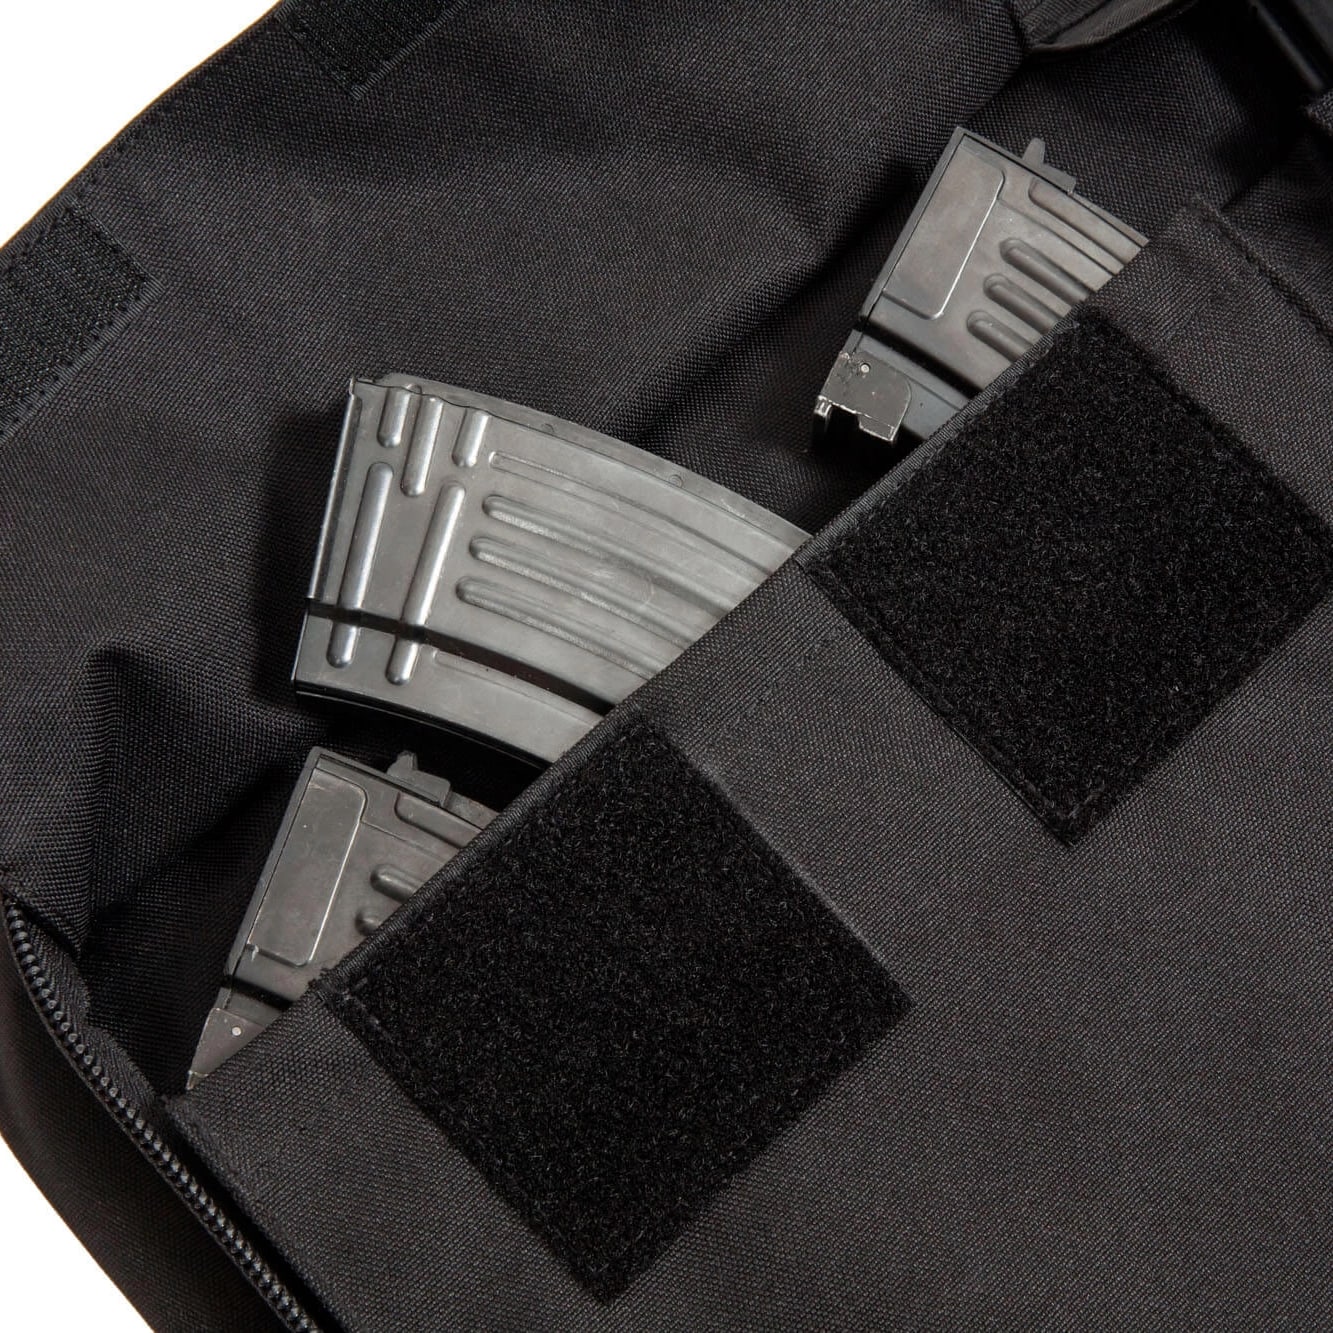 Pokrowiec na replikę Specna Arms Gun Bag V3 - Czarny